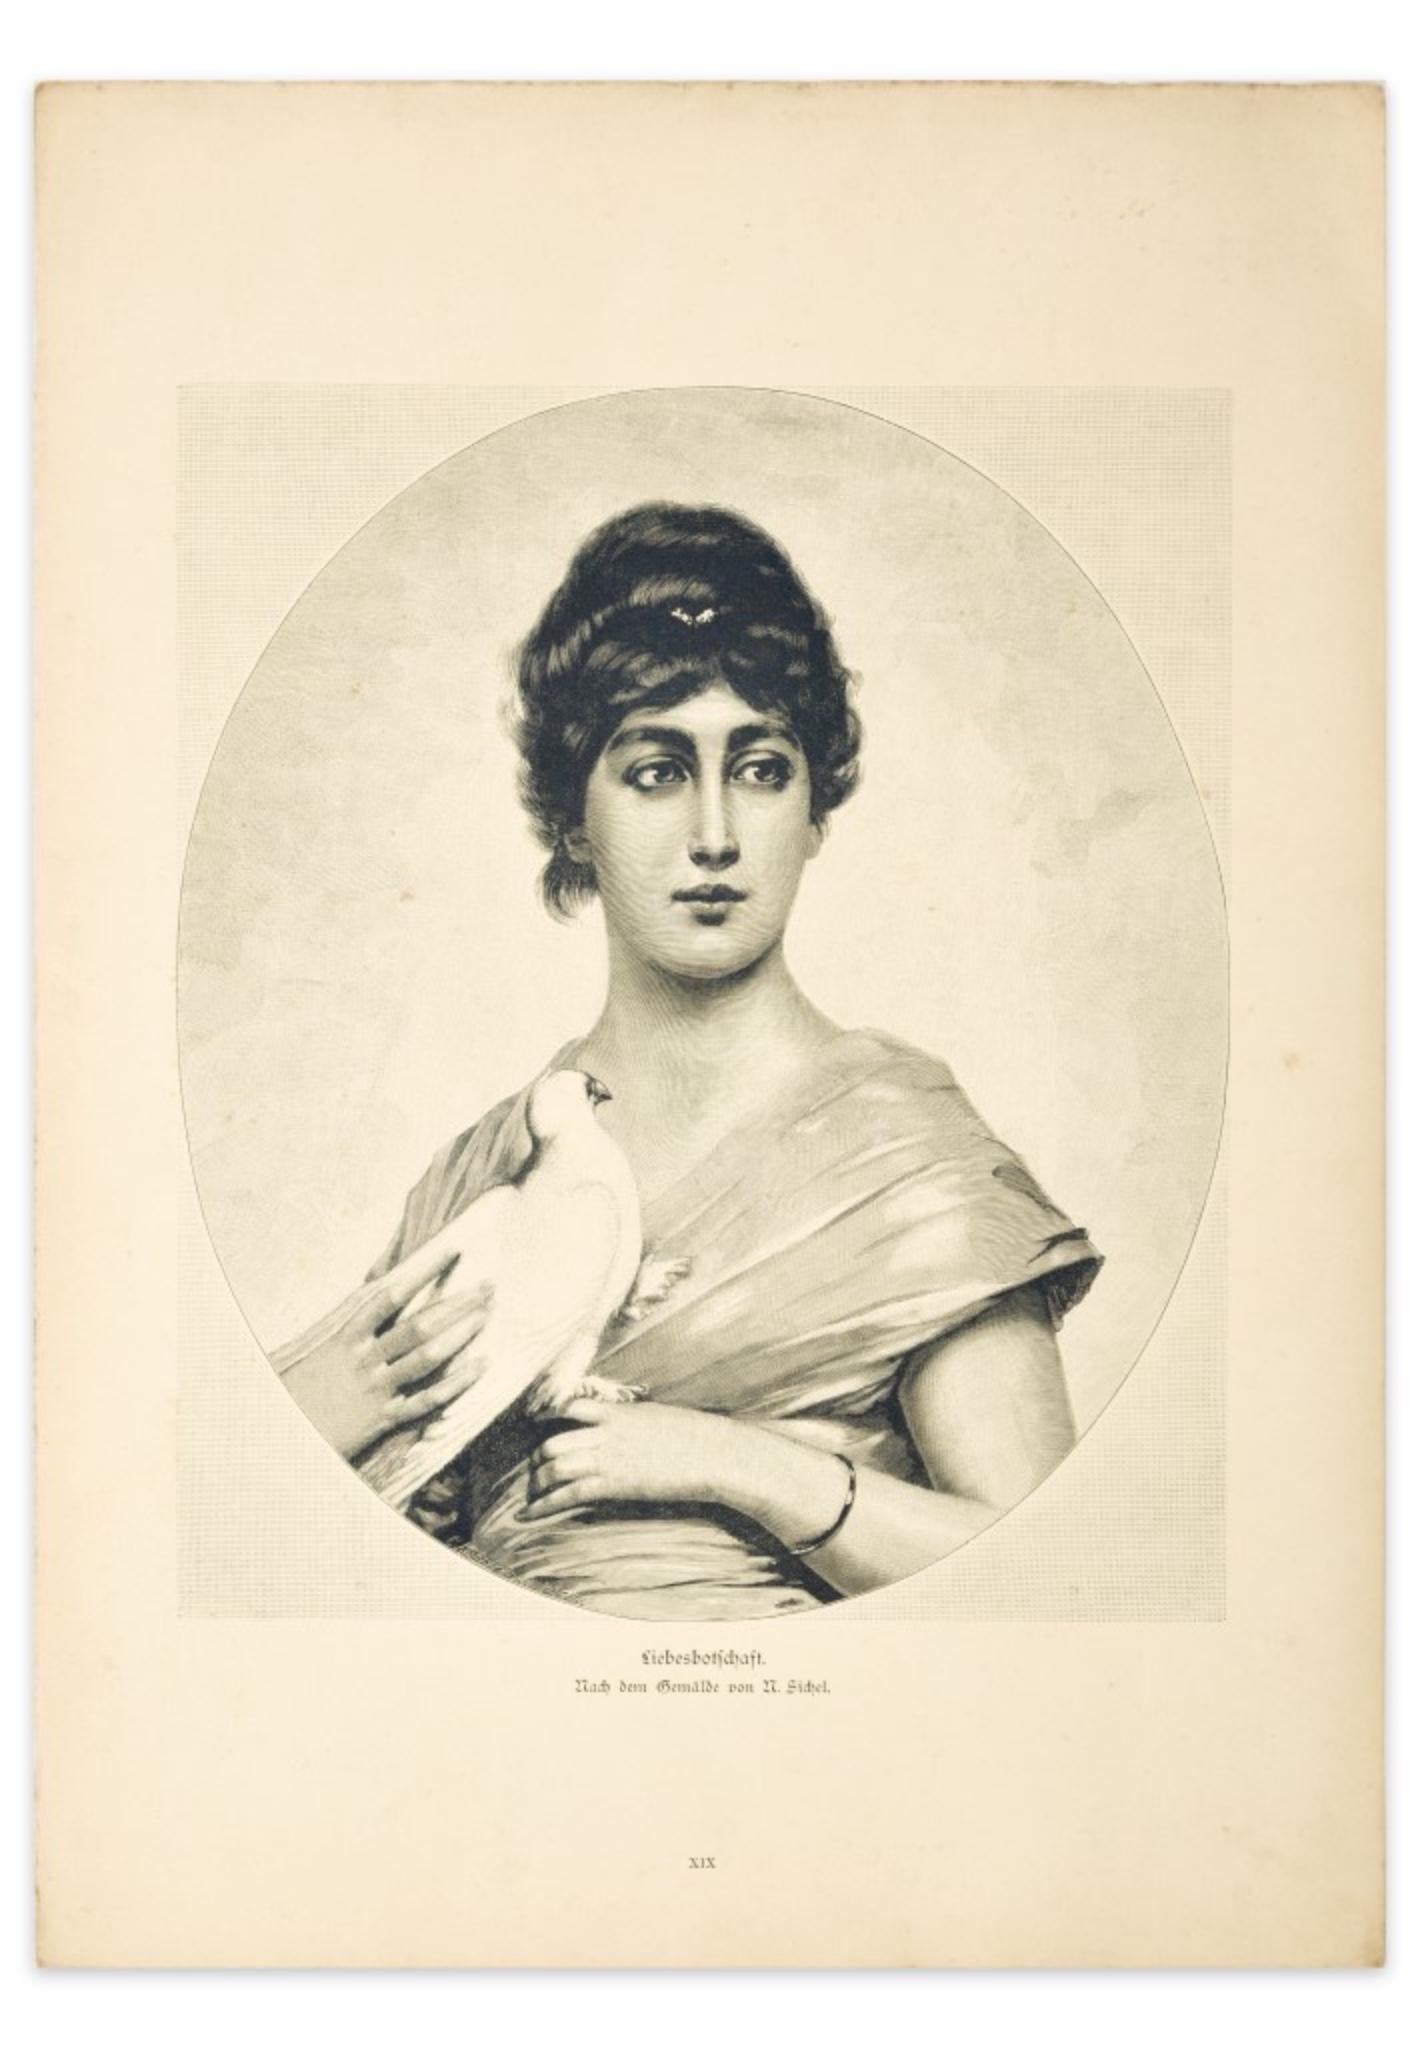 D'Apres M. Sichel Portrait Print – Woman with Dove - Original Zinkographie nach M. Sichel - 1905